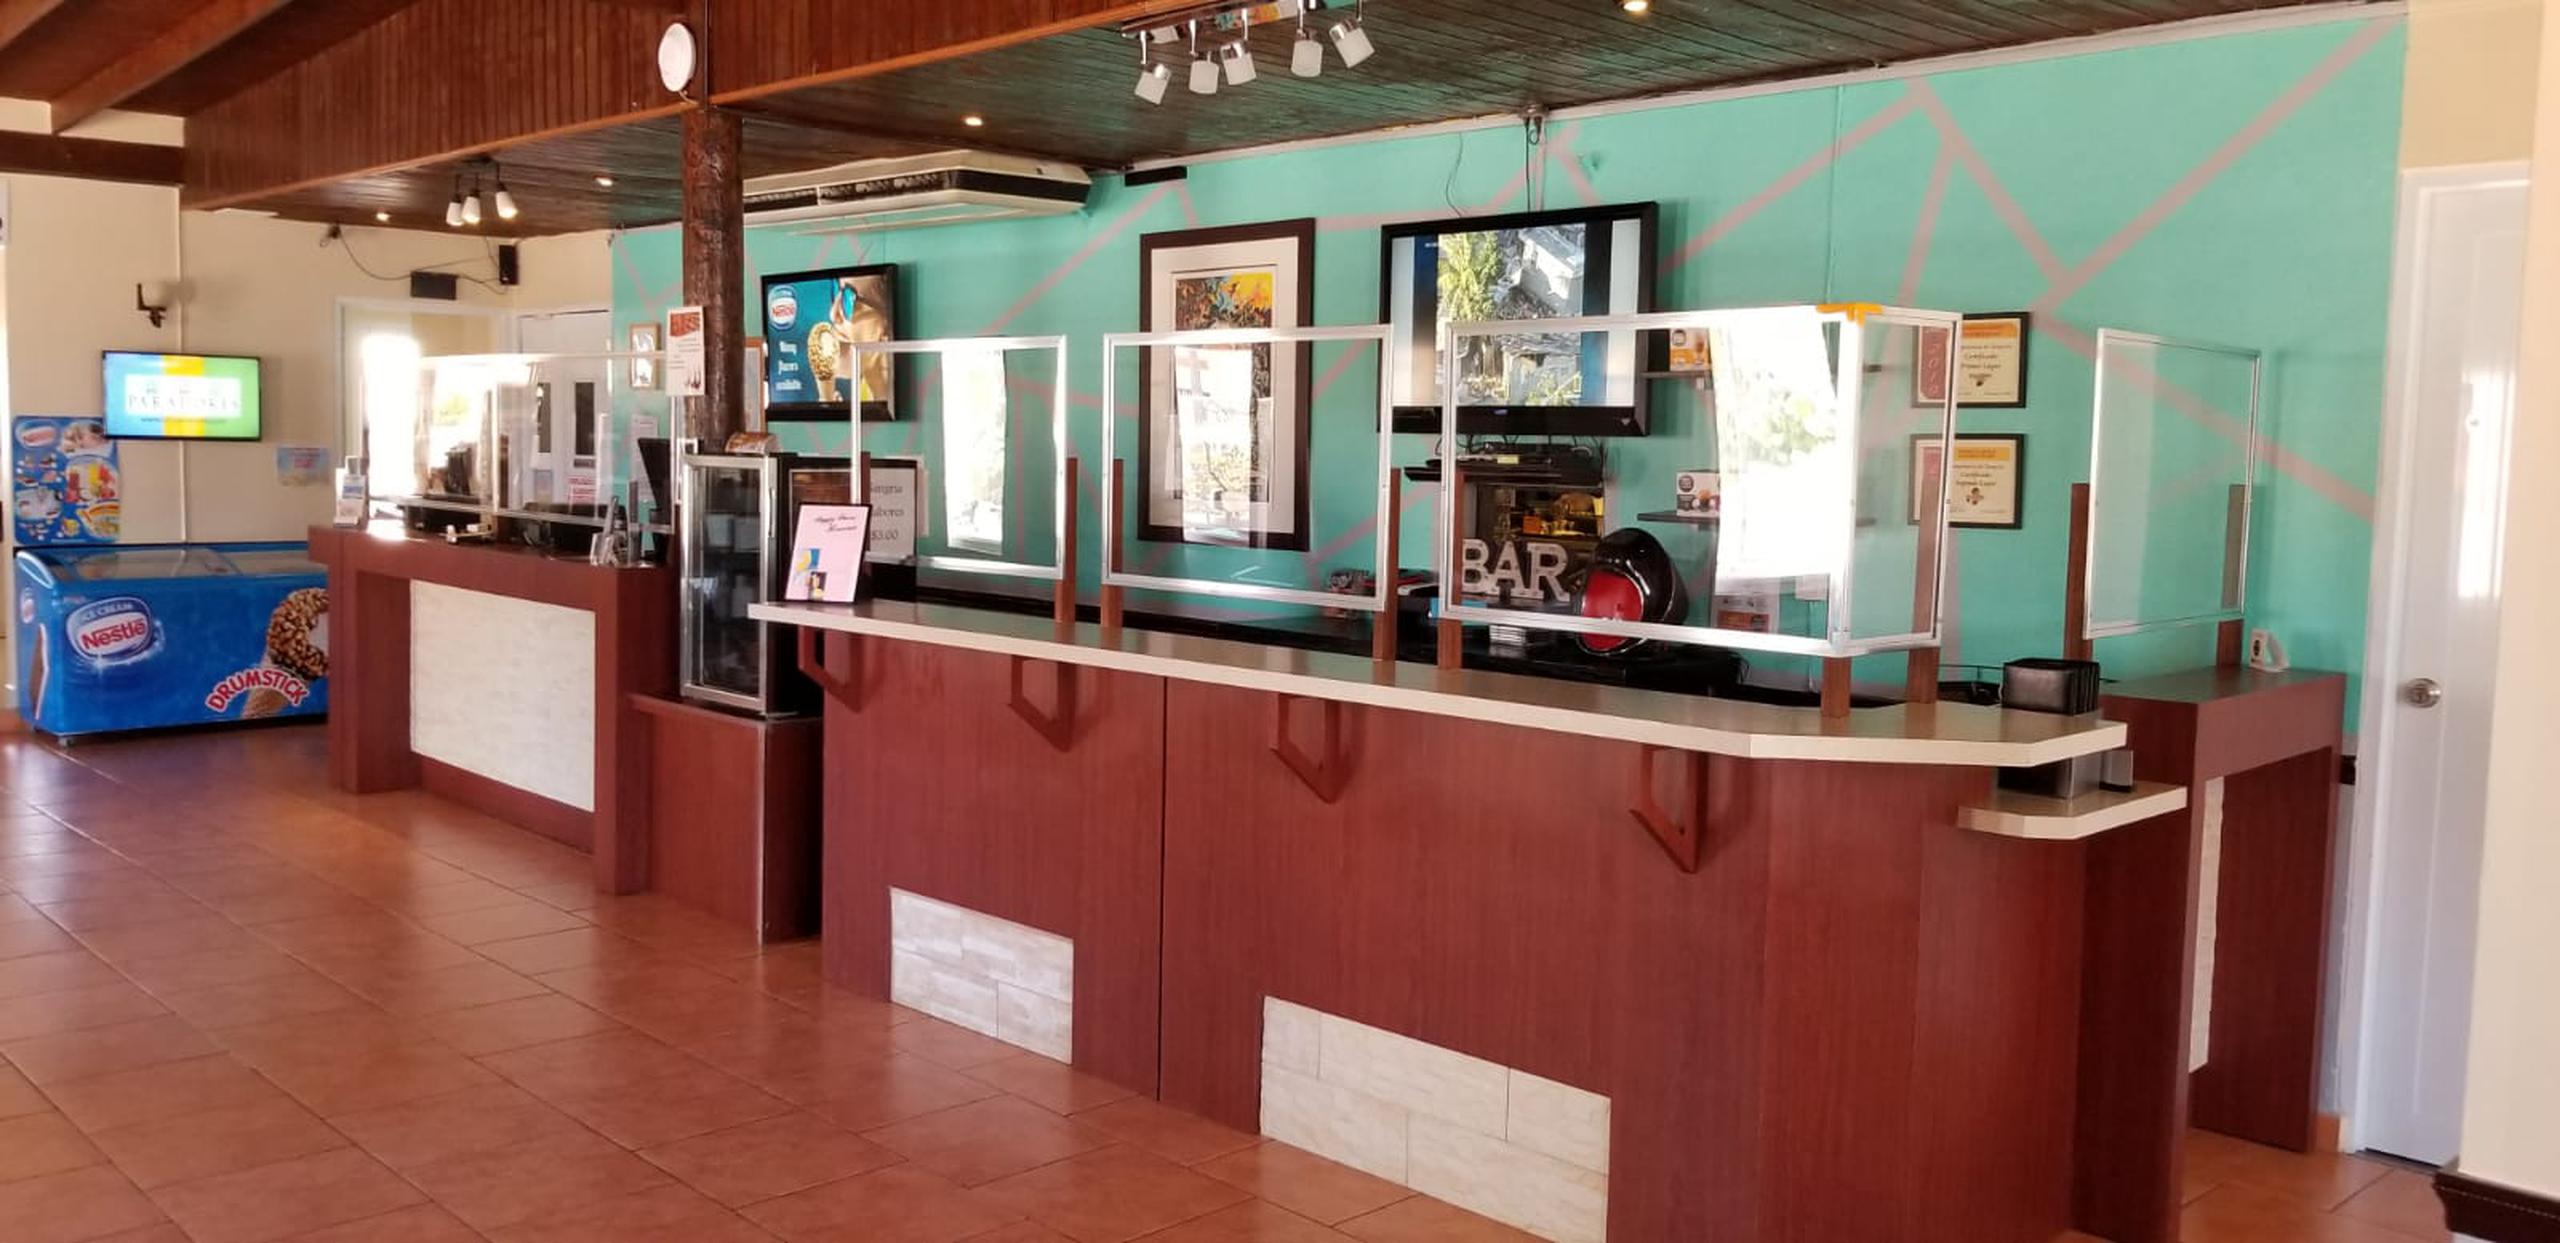 Remodelado bar y lobby del Condado Beach Resort, parte de las mejoras realizadas con una inversión de cerca de $60,000.